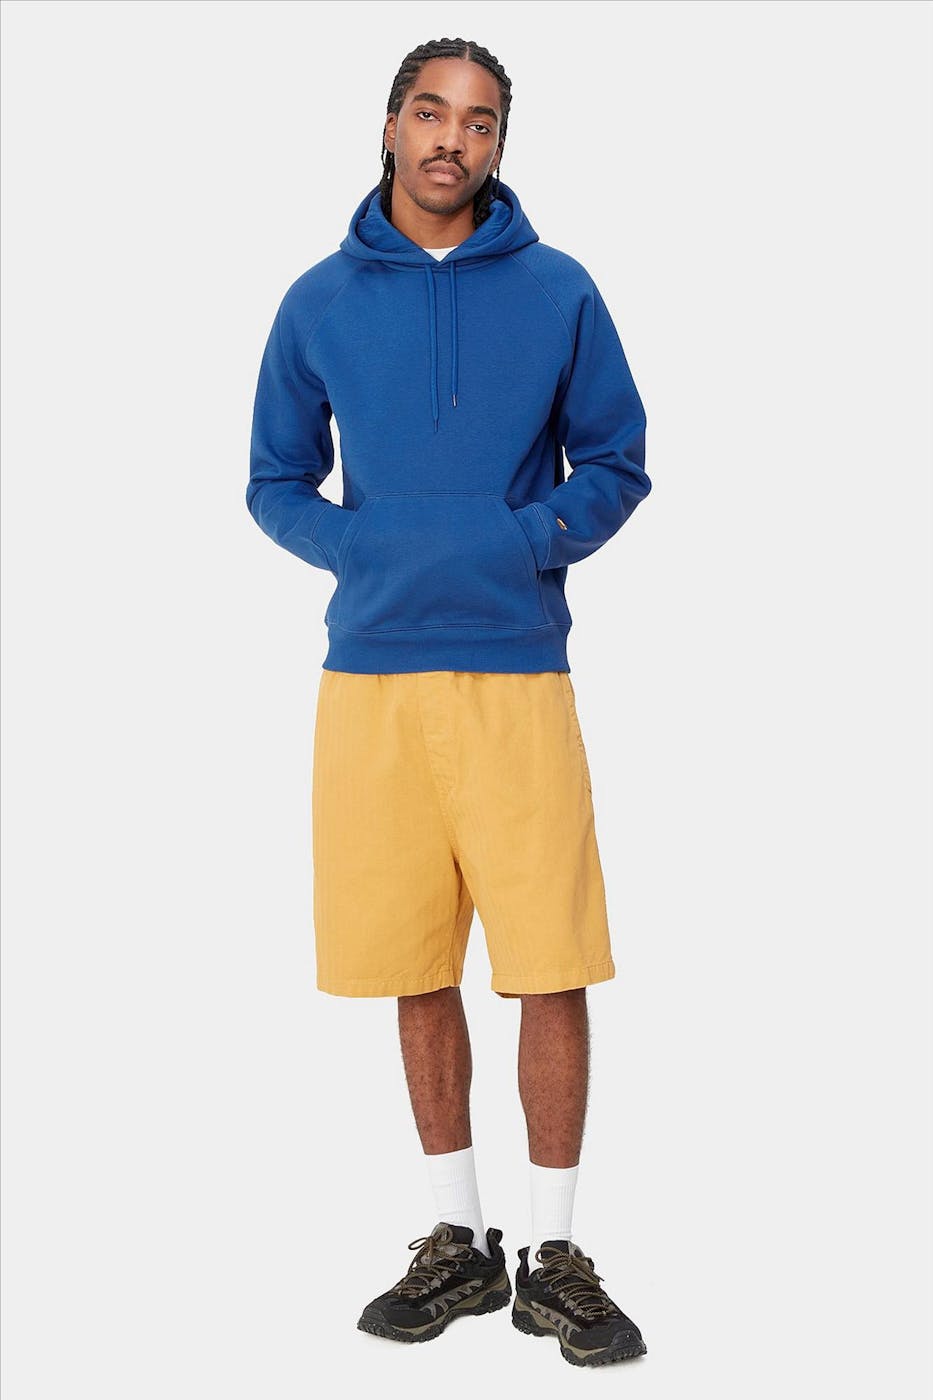 Carhartt WIP - Kobaltblauwe Chase hoodie